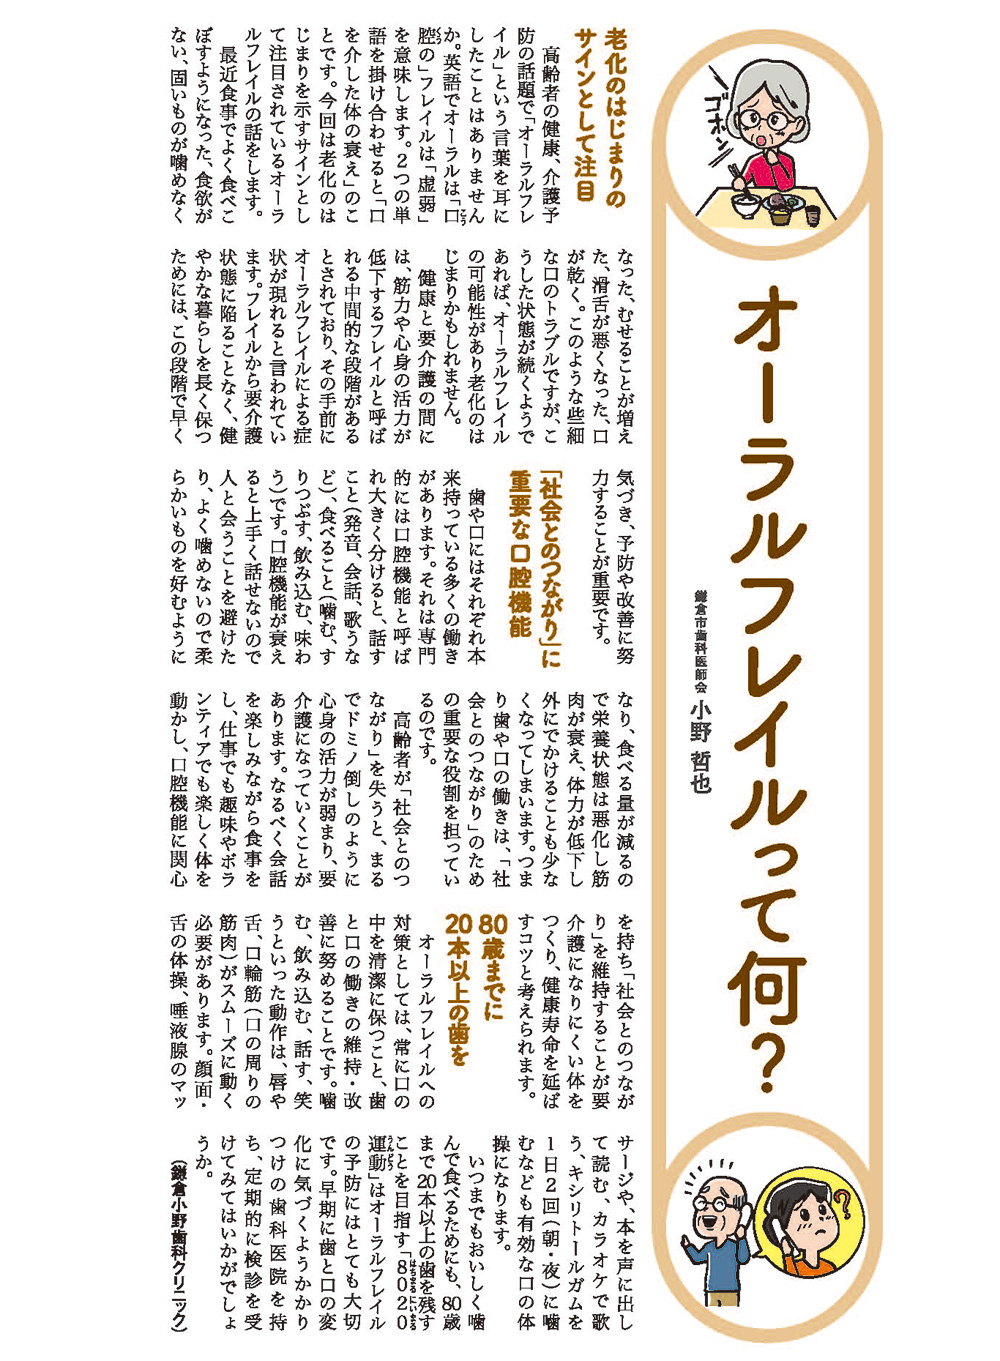 鎌倉衛生時報 2015年12月15日発行